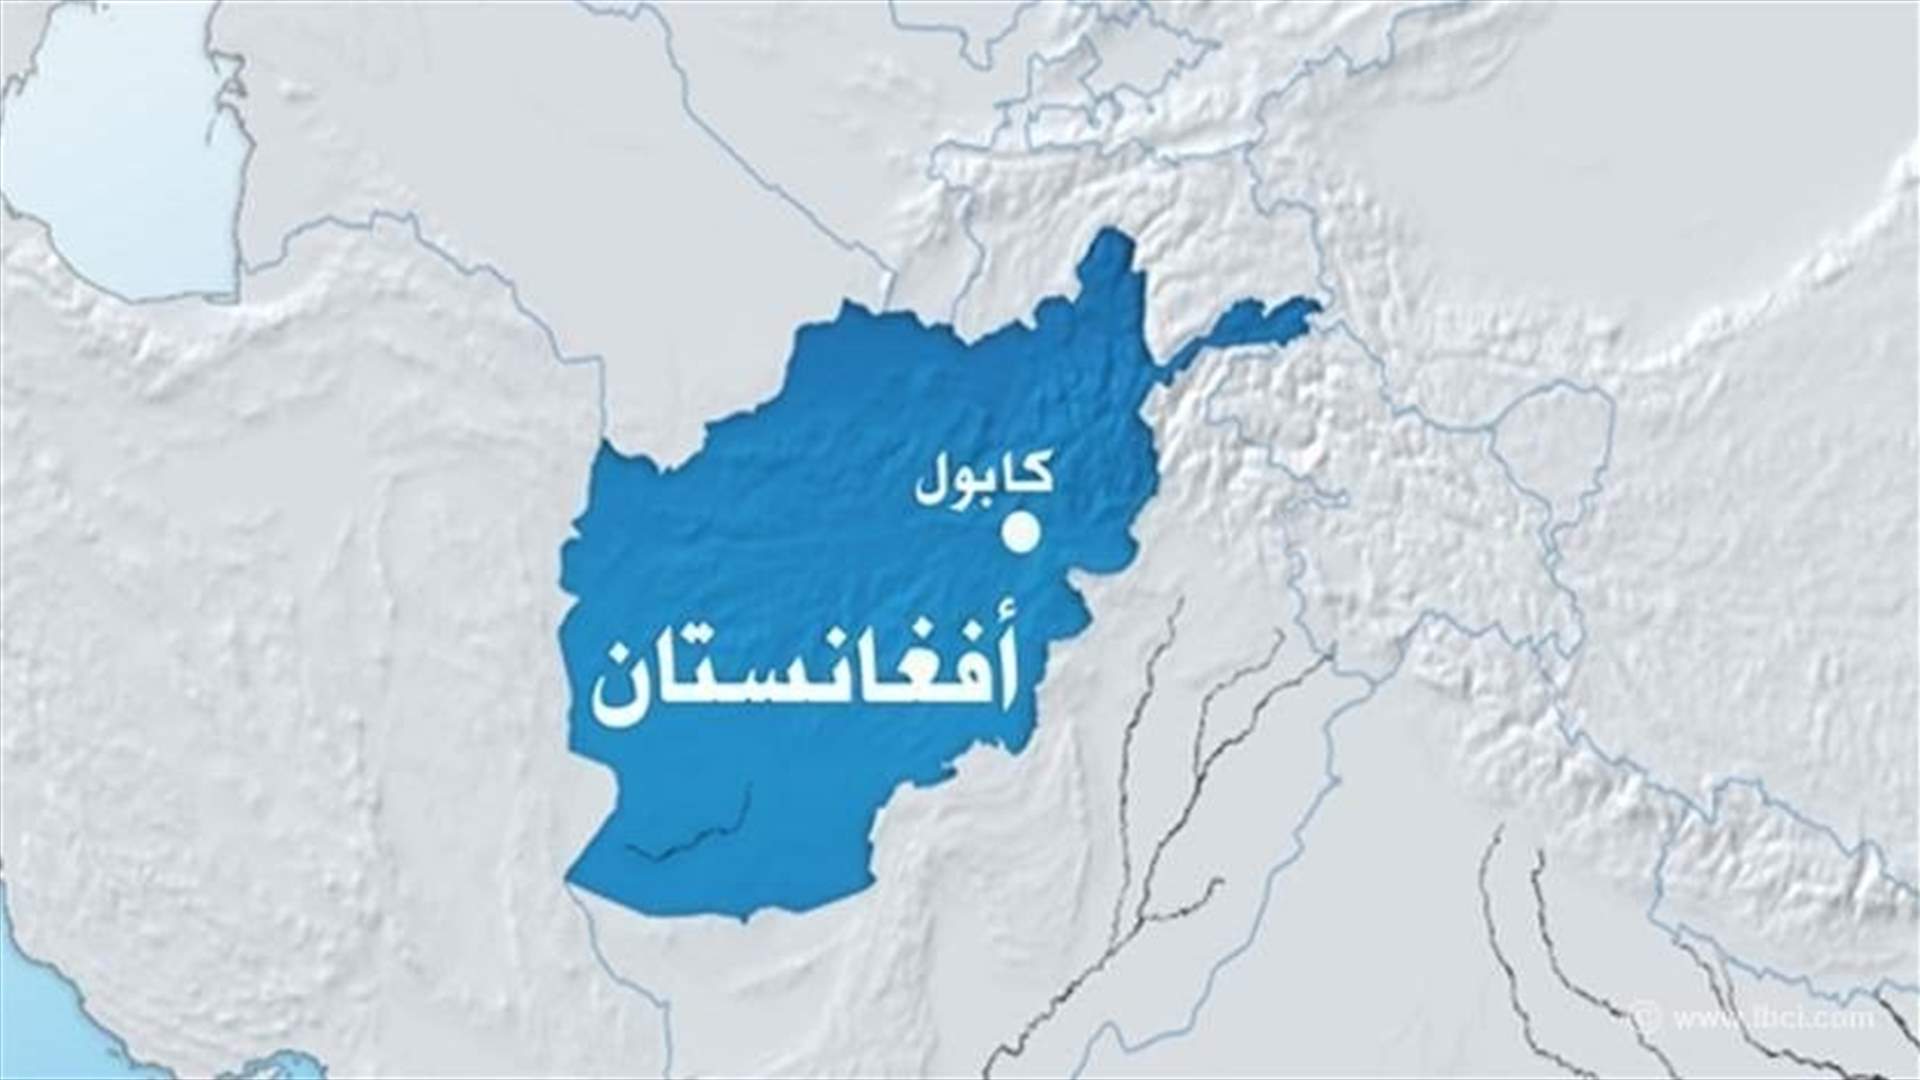 19 قتيلا على الأقل في عملية انتحارية ضد مركز تربوي في كابول